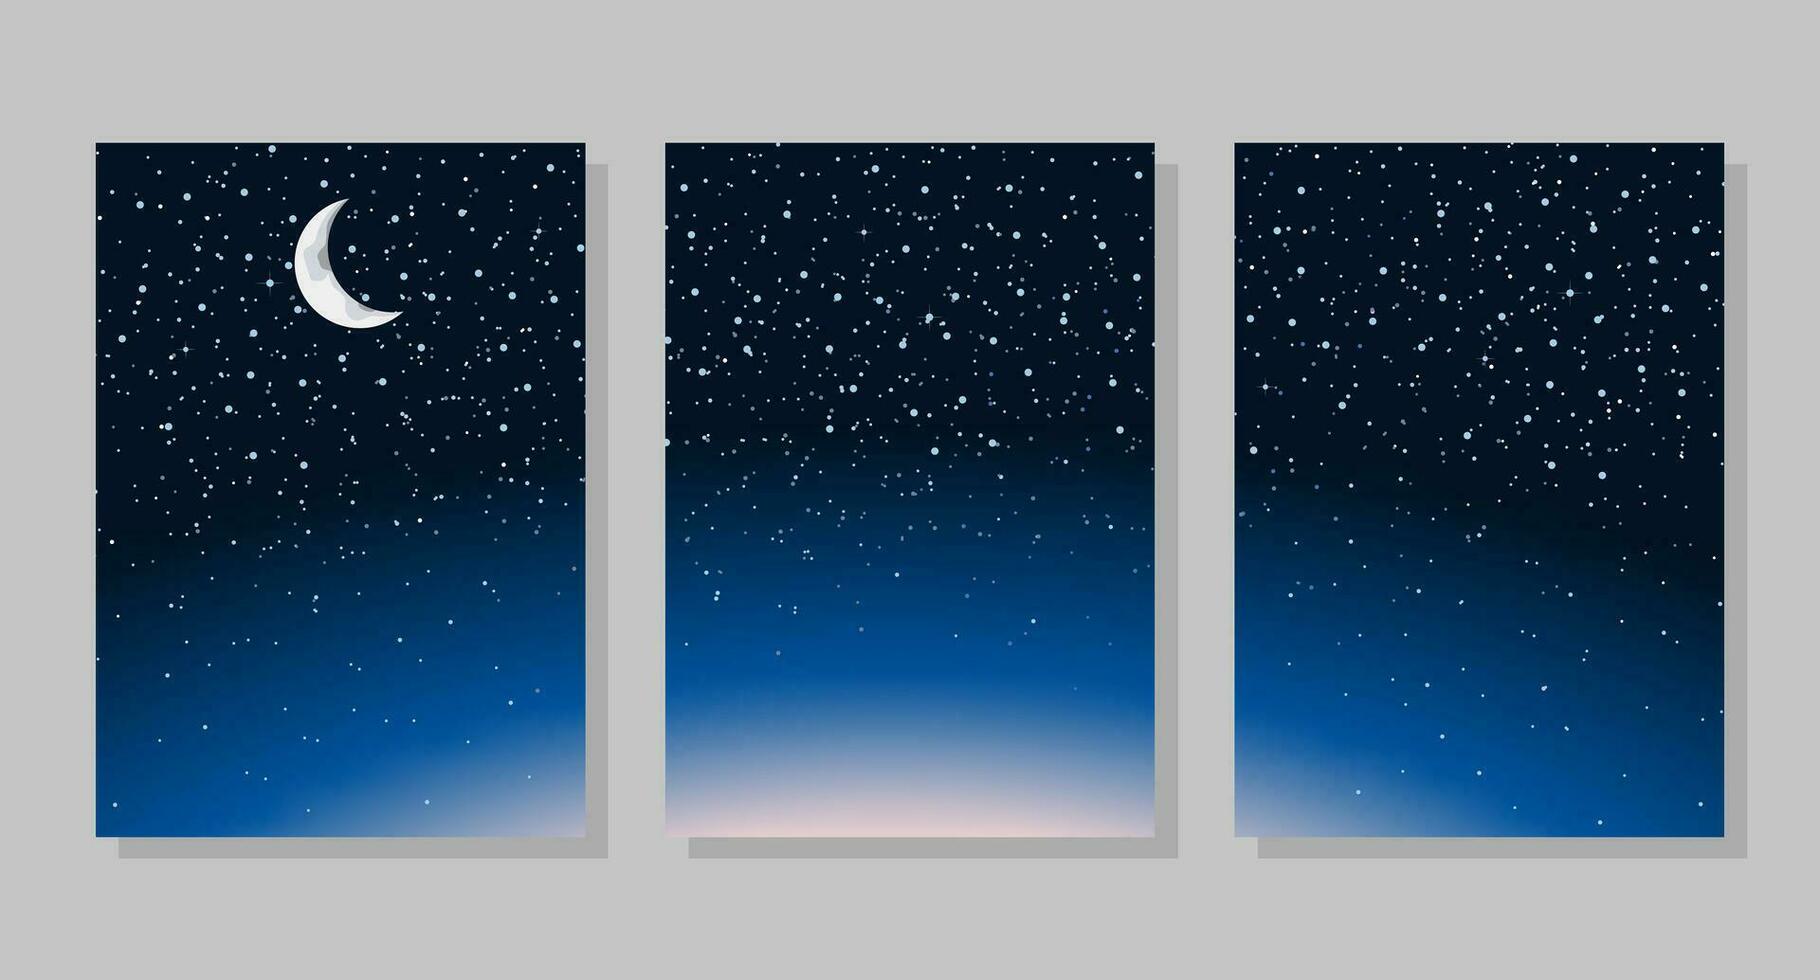 uppsättning av natt himmel bakgrund, ramar. måne och stjärnor. vektor illustration. social media baner mall för berättelser, inlägg, bloggar, kort, inbjudningar.